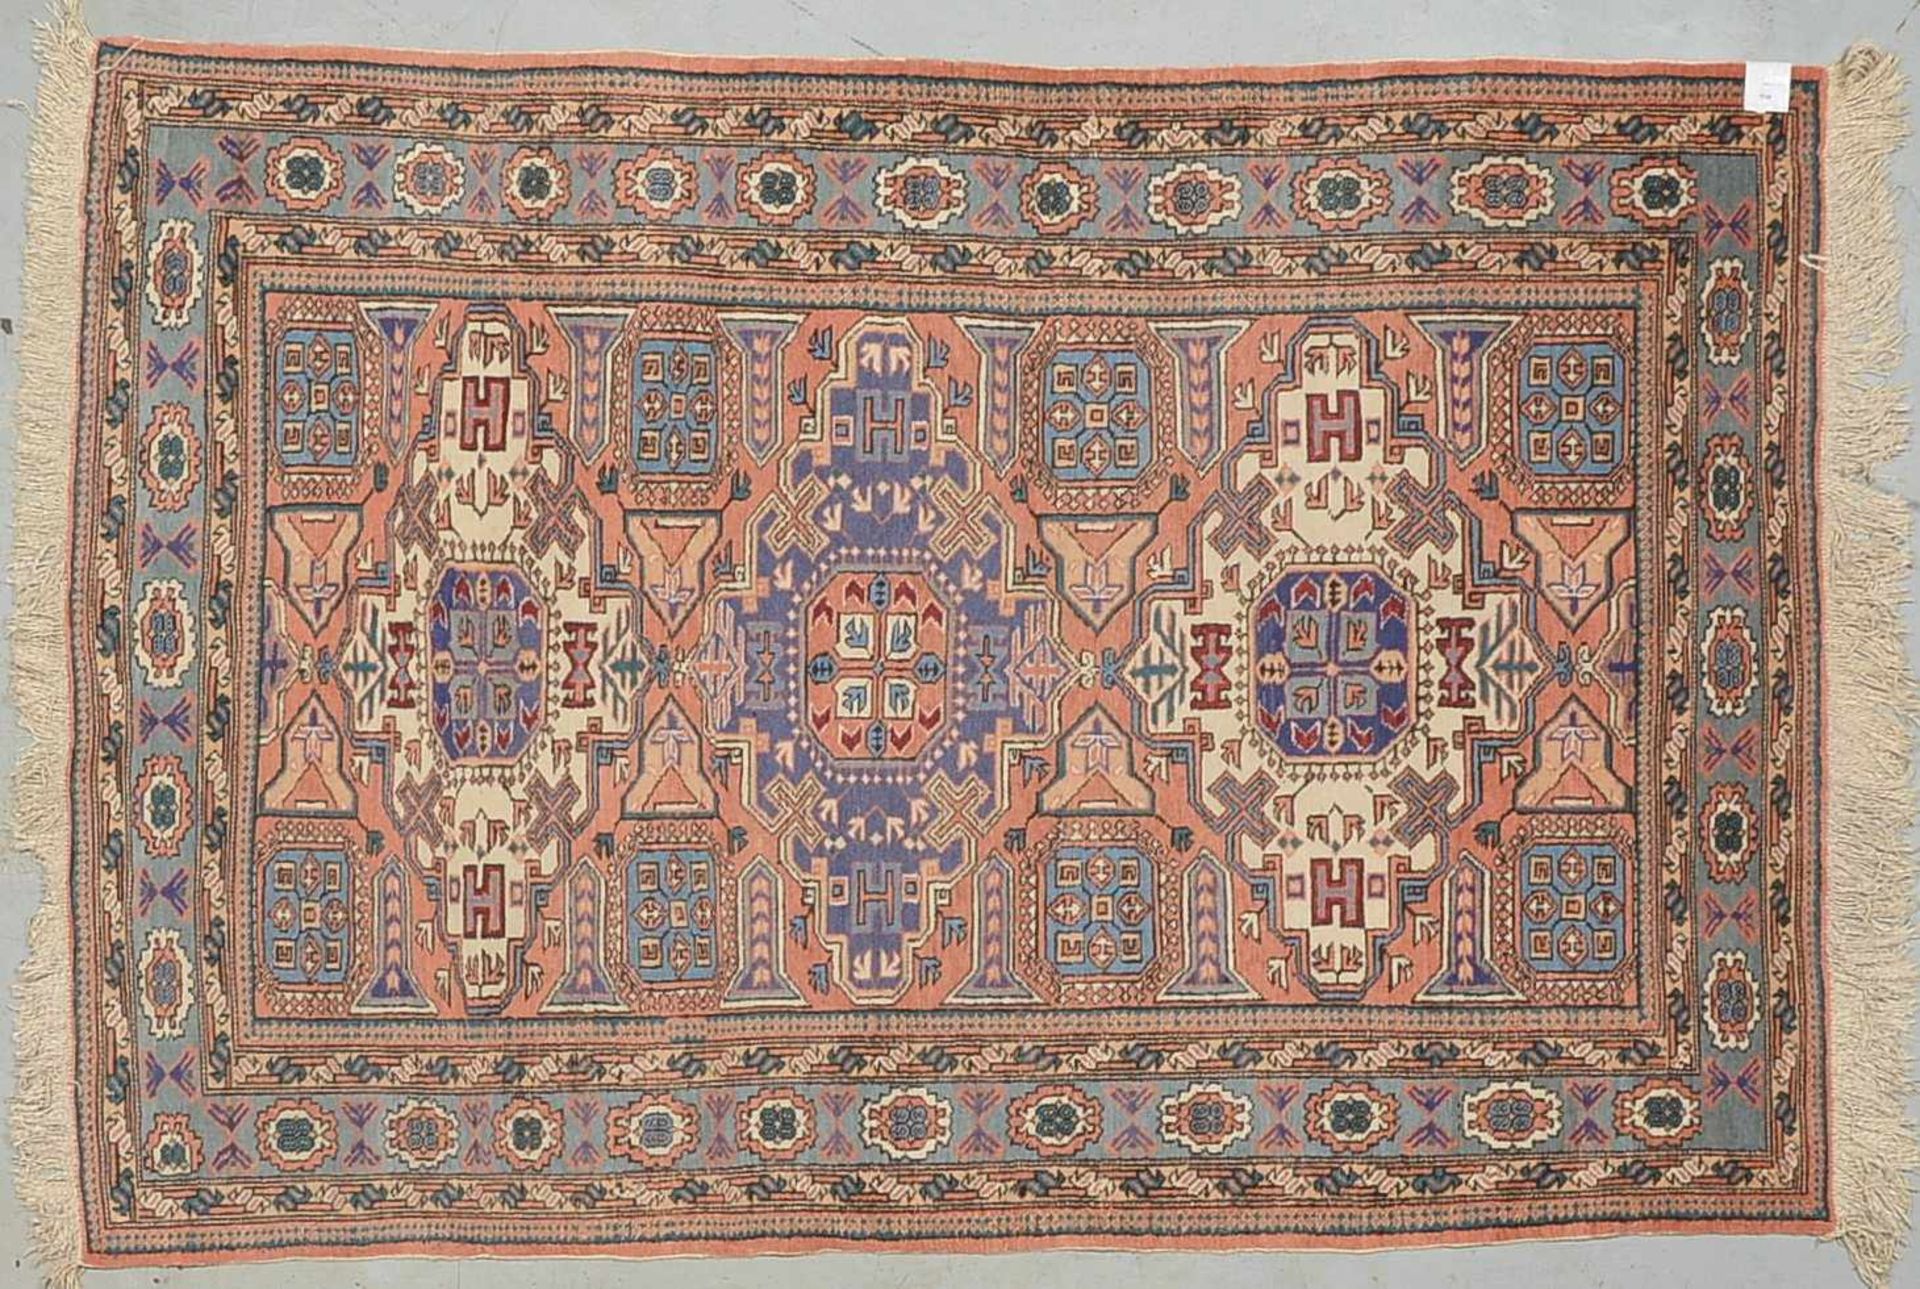 Orientteppich, ungewöhnliche Farbgebung, komplett, Flor in akzeptablem Zustand; Maße 200 x 140 cm